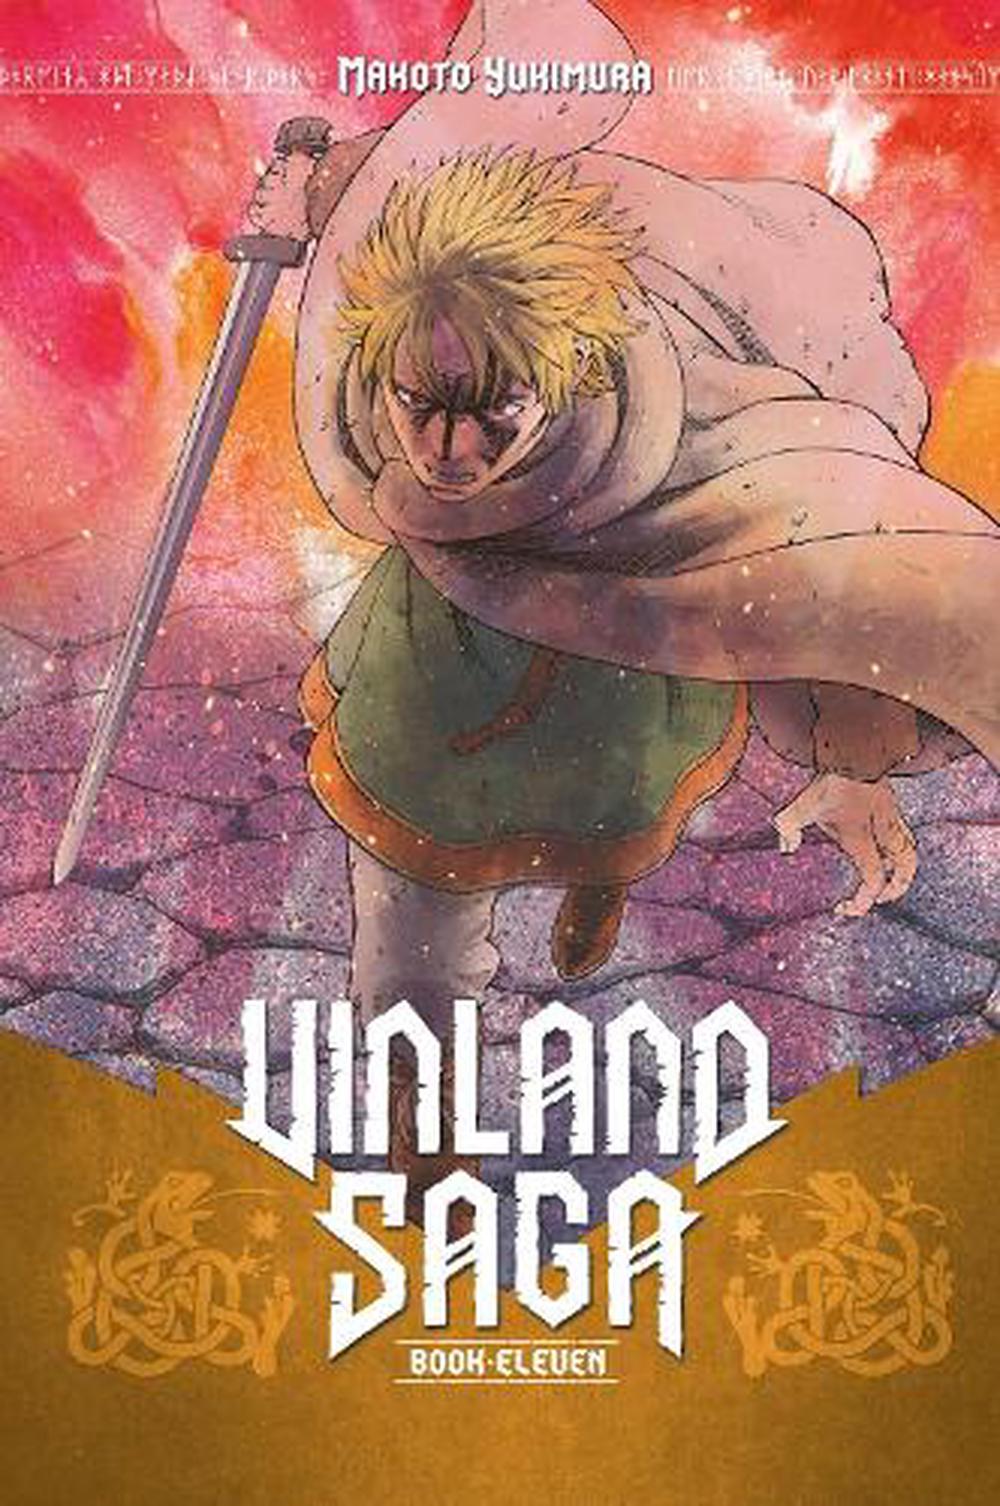 Vinland Saga Manga Online